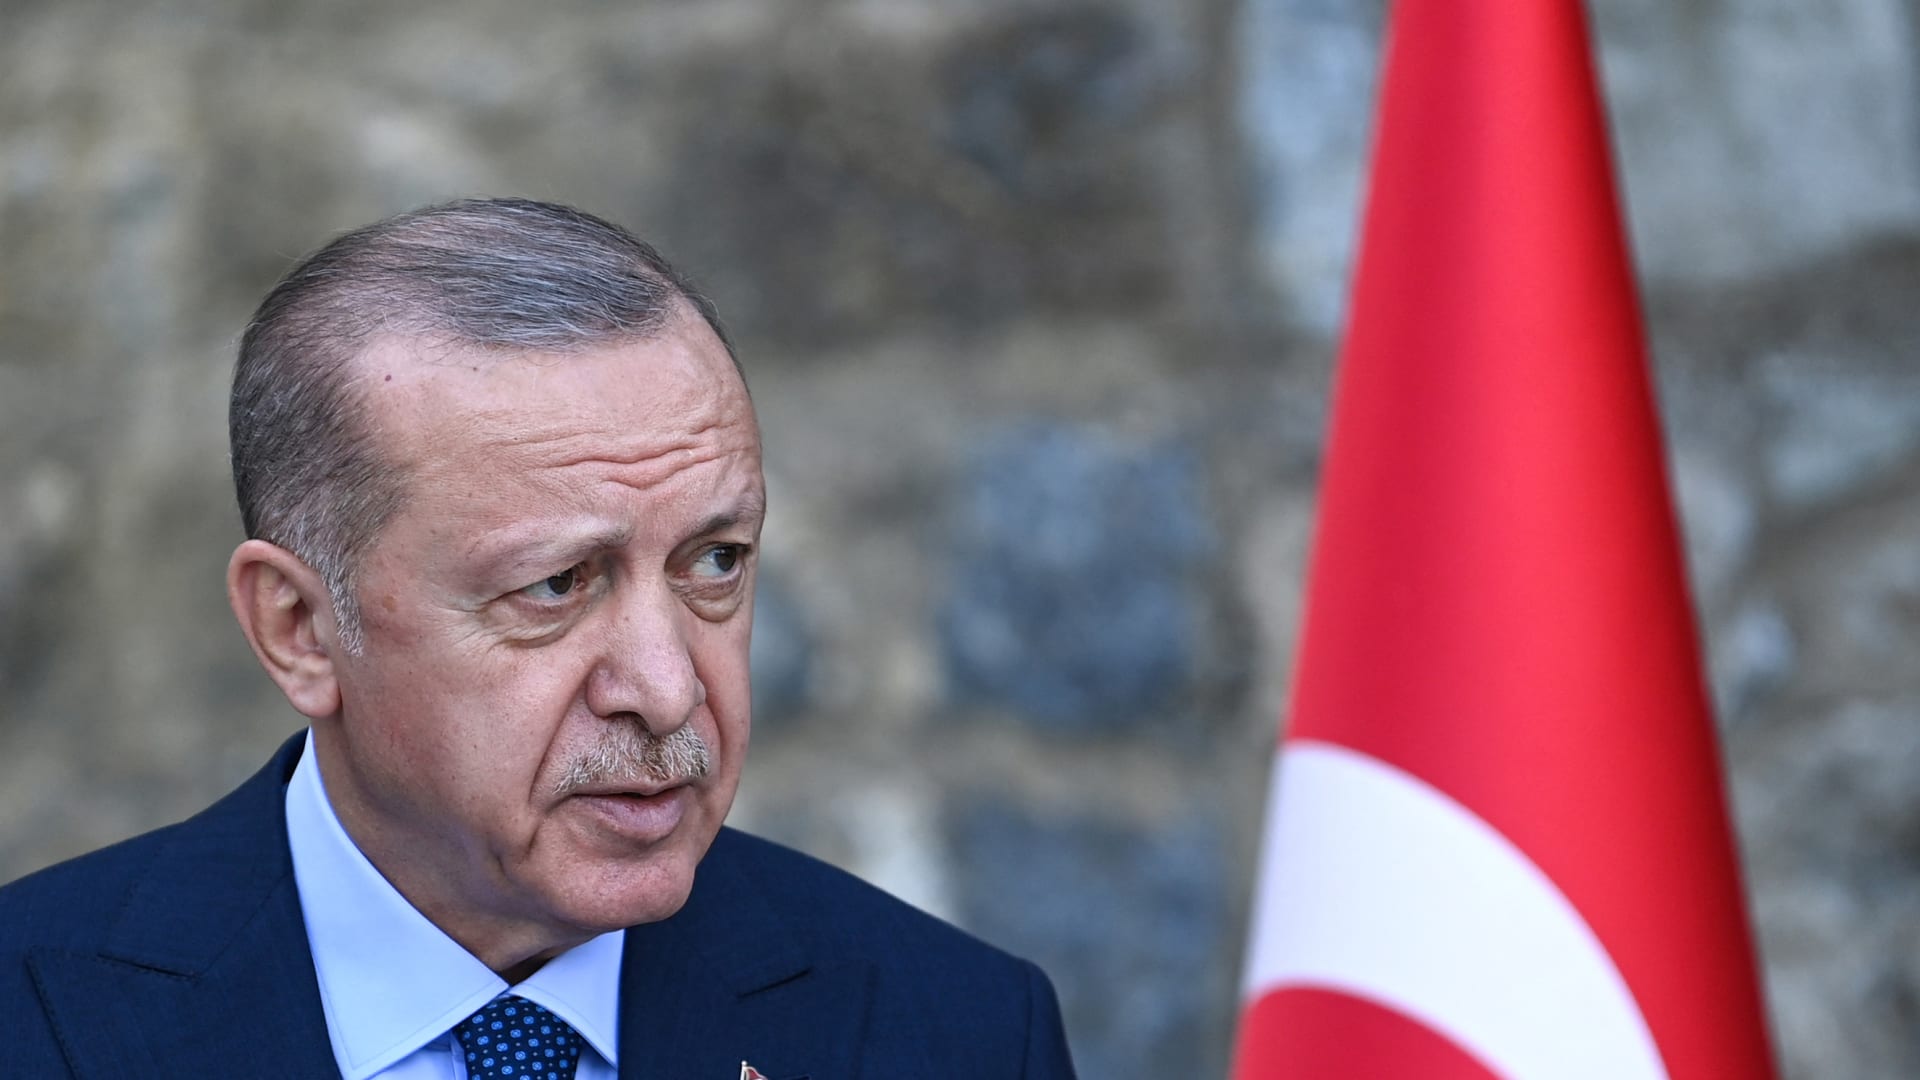 أردوغان: سفراء الدول العشر يجب أن يغادروا البلاد إذا لم يفهموا تركيا